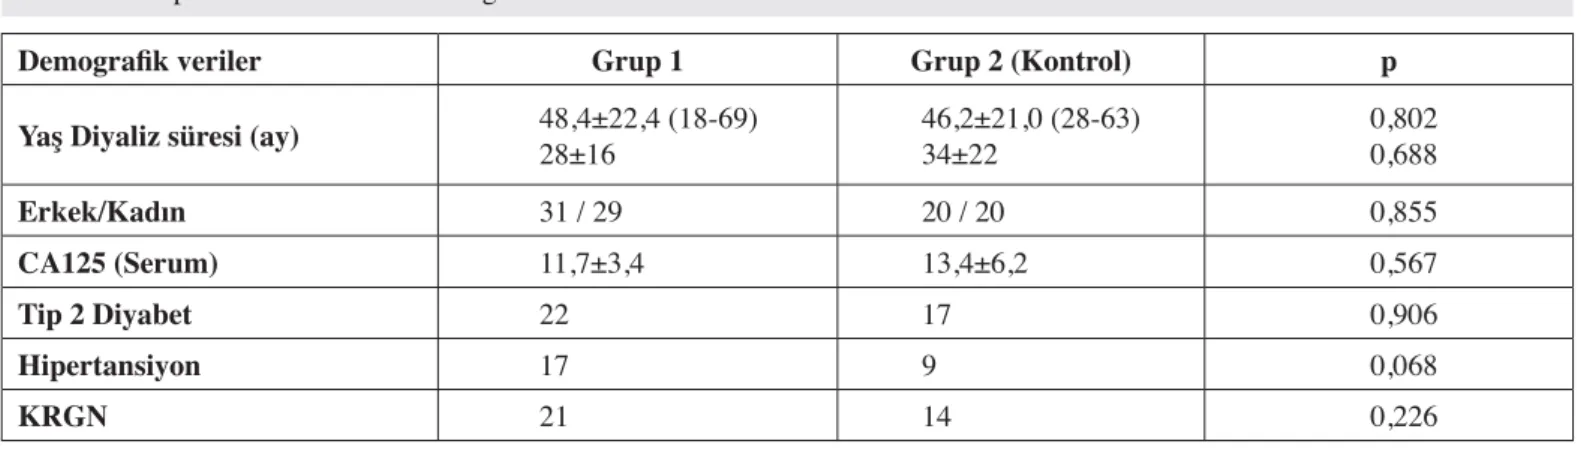 Şekil 1: Gruplar arasında tedavi öncesi ve sonrası diyalizat CA-125 